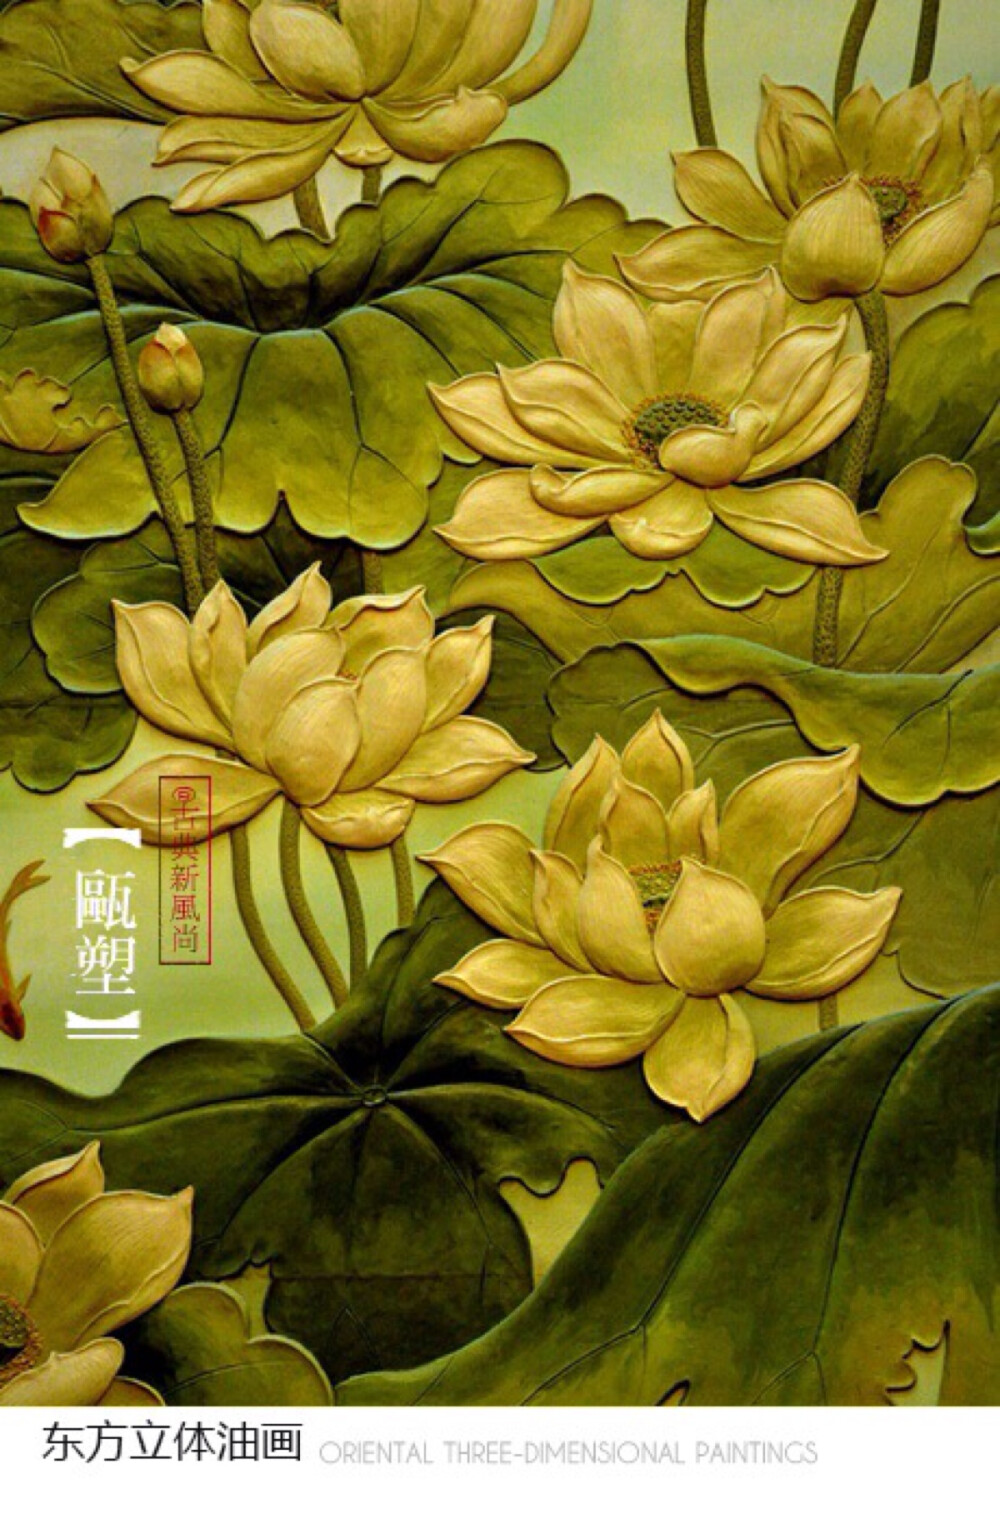 瓯塑俗称油泥塑,是浙江温州民间独有的传统美术工艺,被誉为“东方的立体油画”。